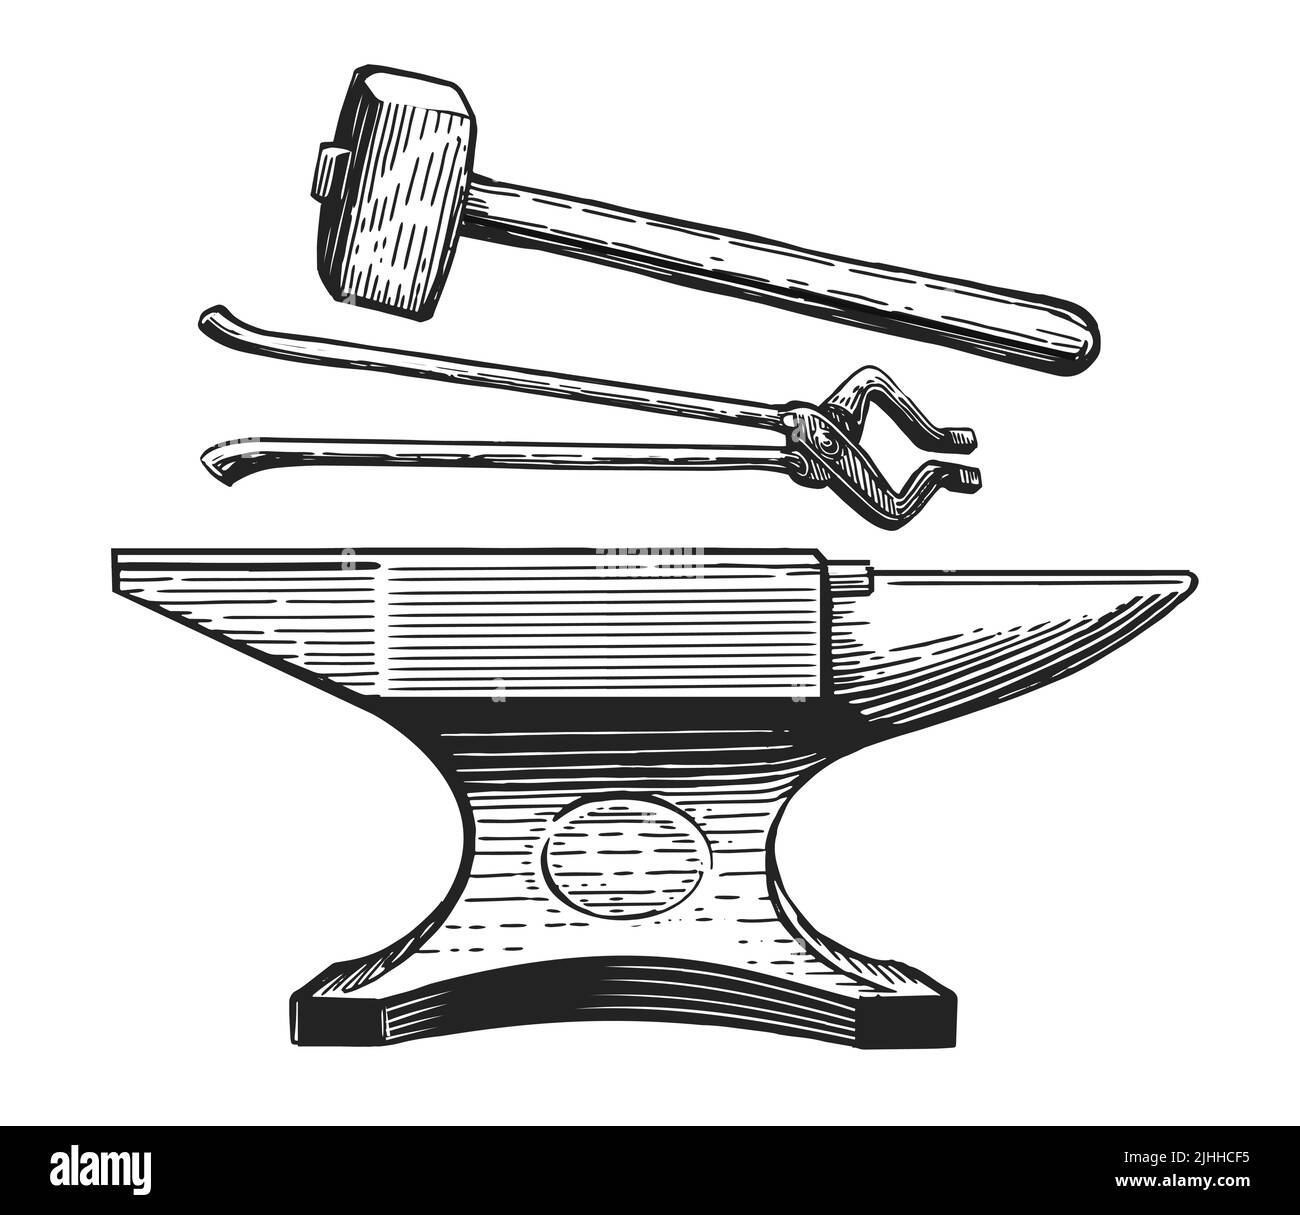 Hand Zeichenwerkzeuge Amboss Hammerzange. Skizze für Schmiede. Metallbearbeitungswerkzeuge im Vintage-Gravurstil Stock Vektor